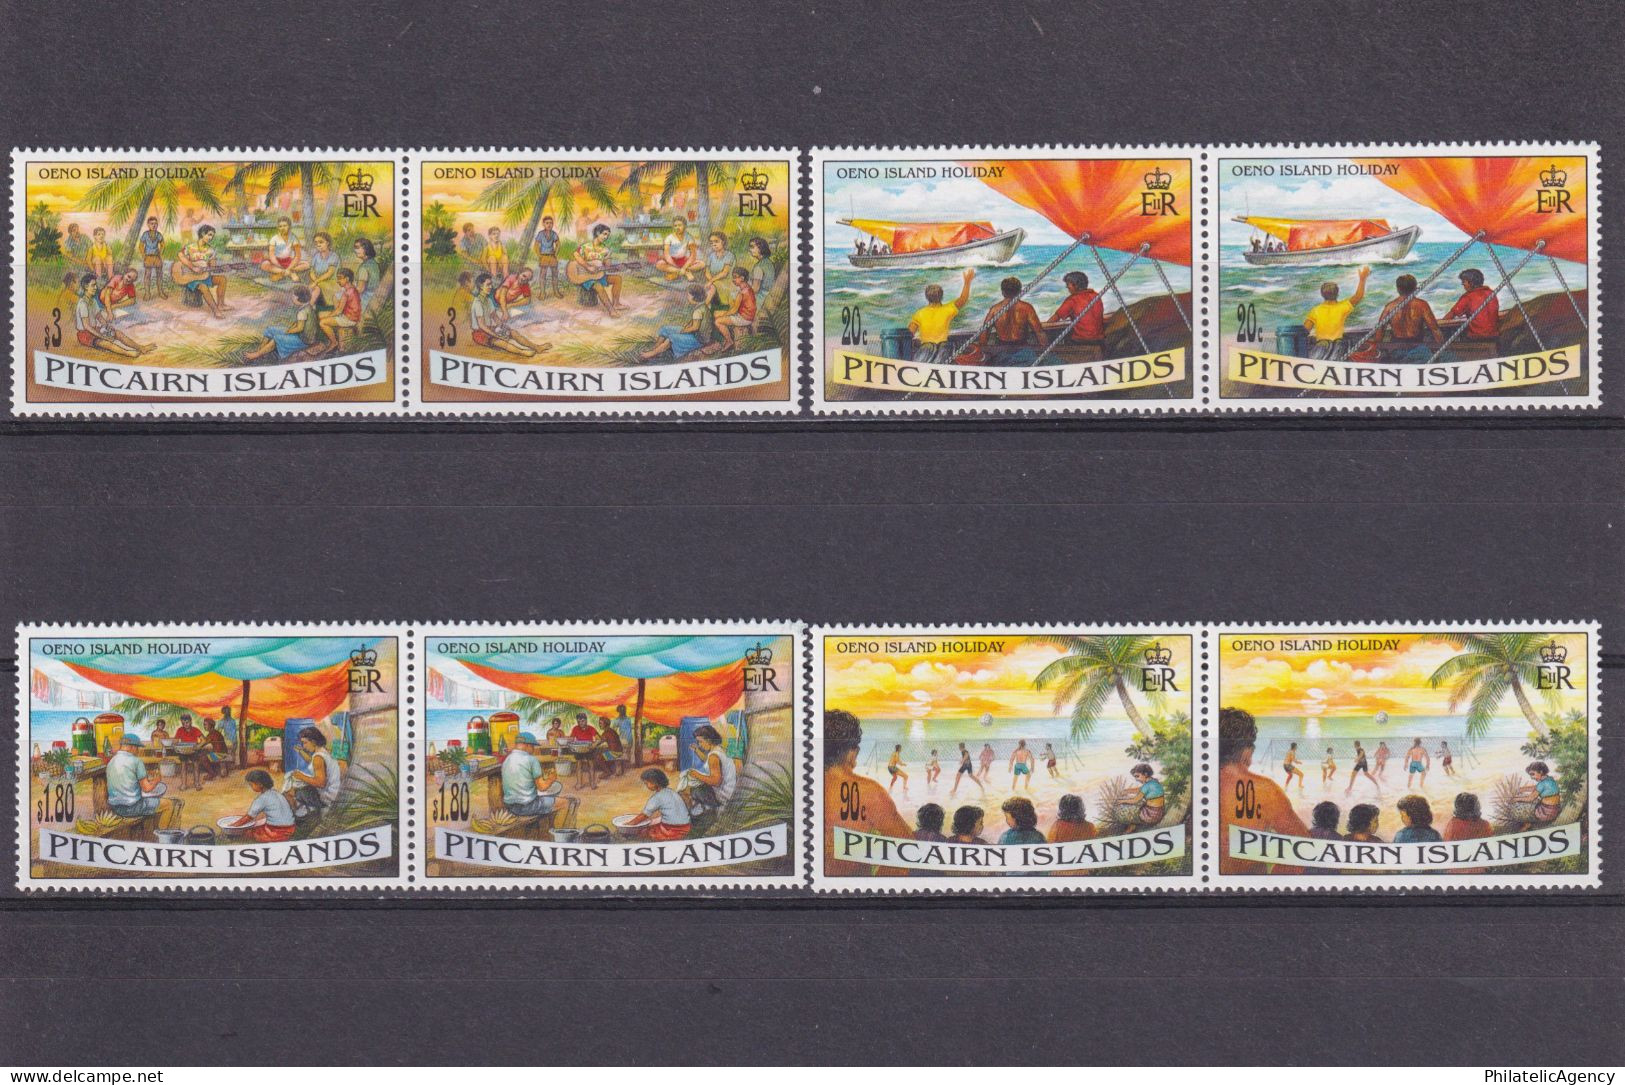 PITCAIRN ISLANDS 1995, Sc #427-430, Pairs, MNH - Pitcairn Islands